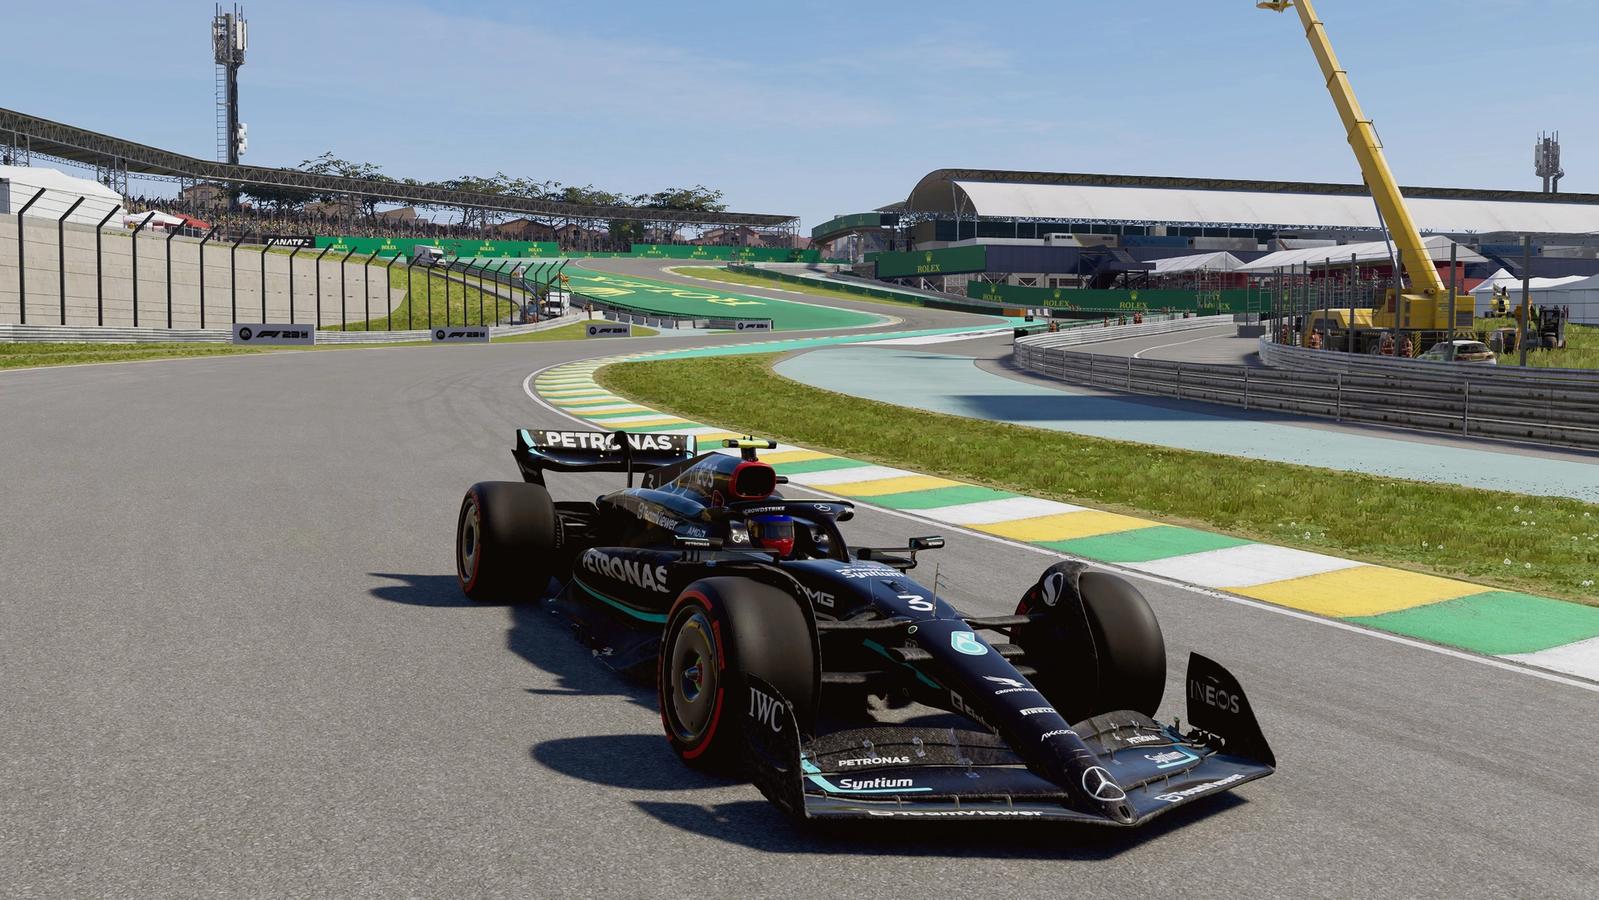 F1 23 Brazil Setup